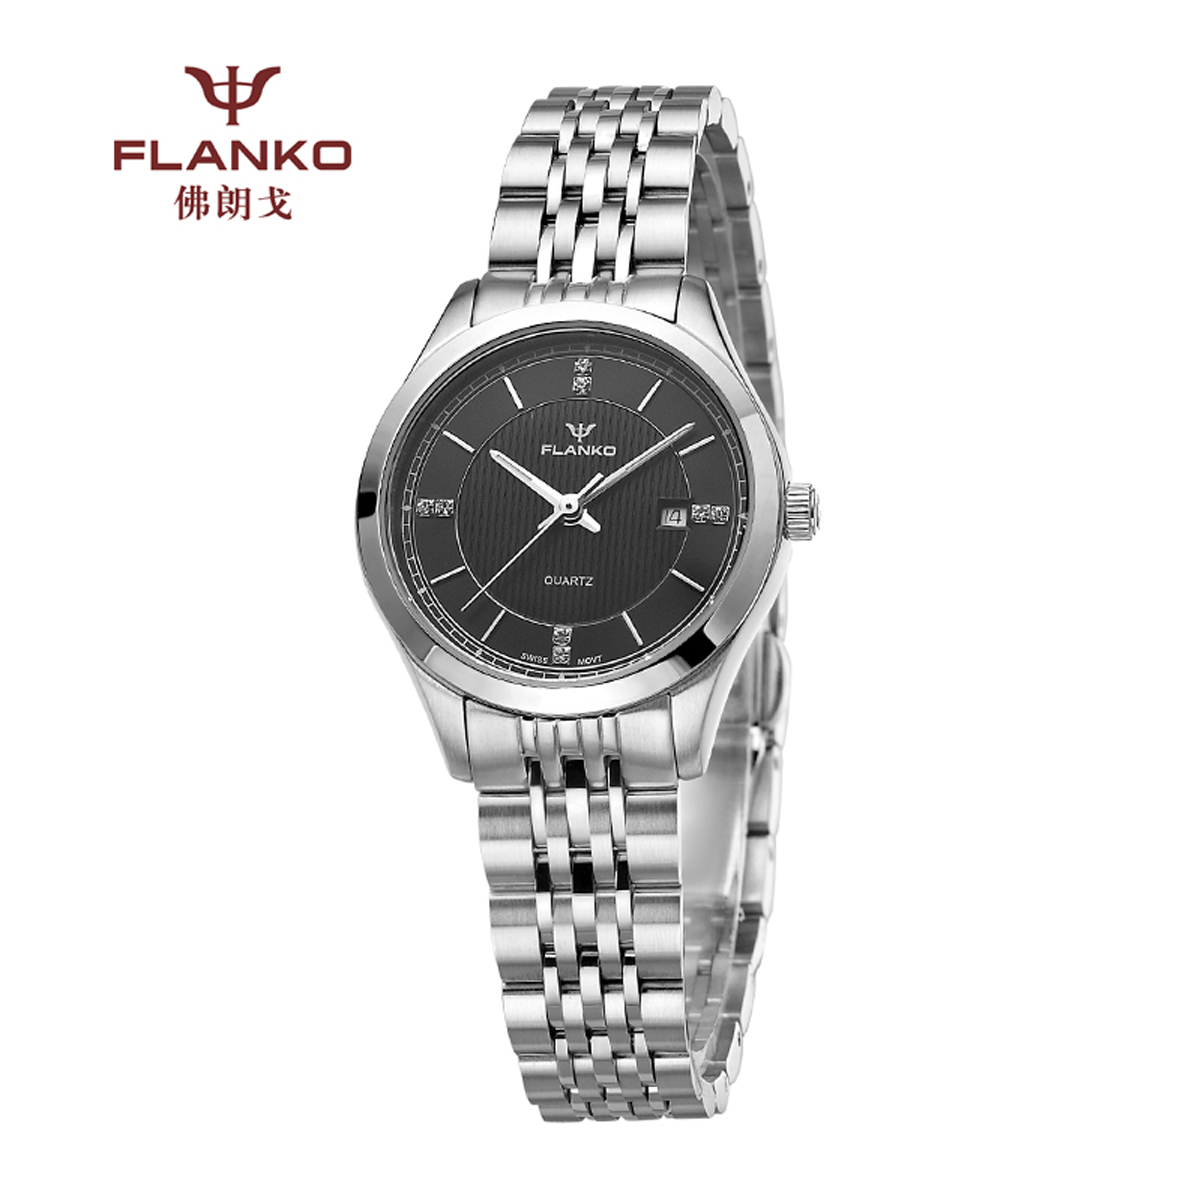 女式腕表价格_腕表品牌相关-深圳市佛朗戈科技有限公司